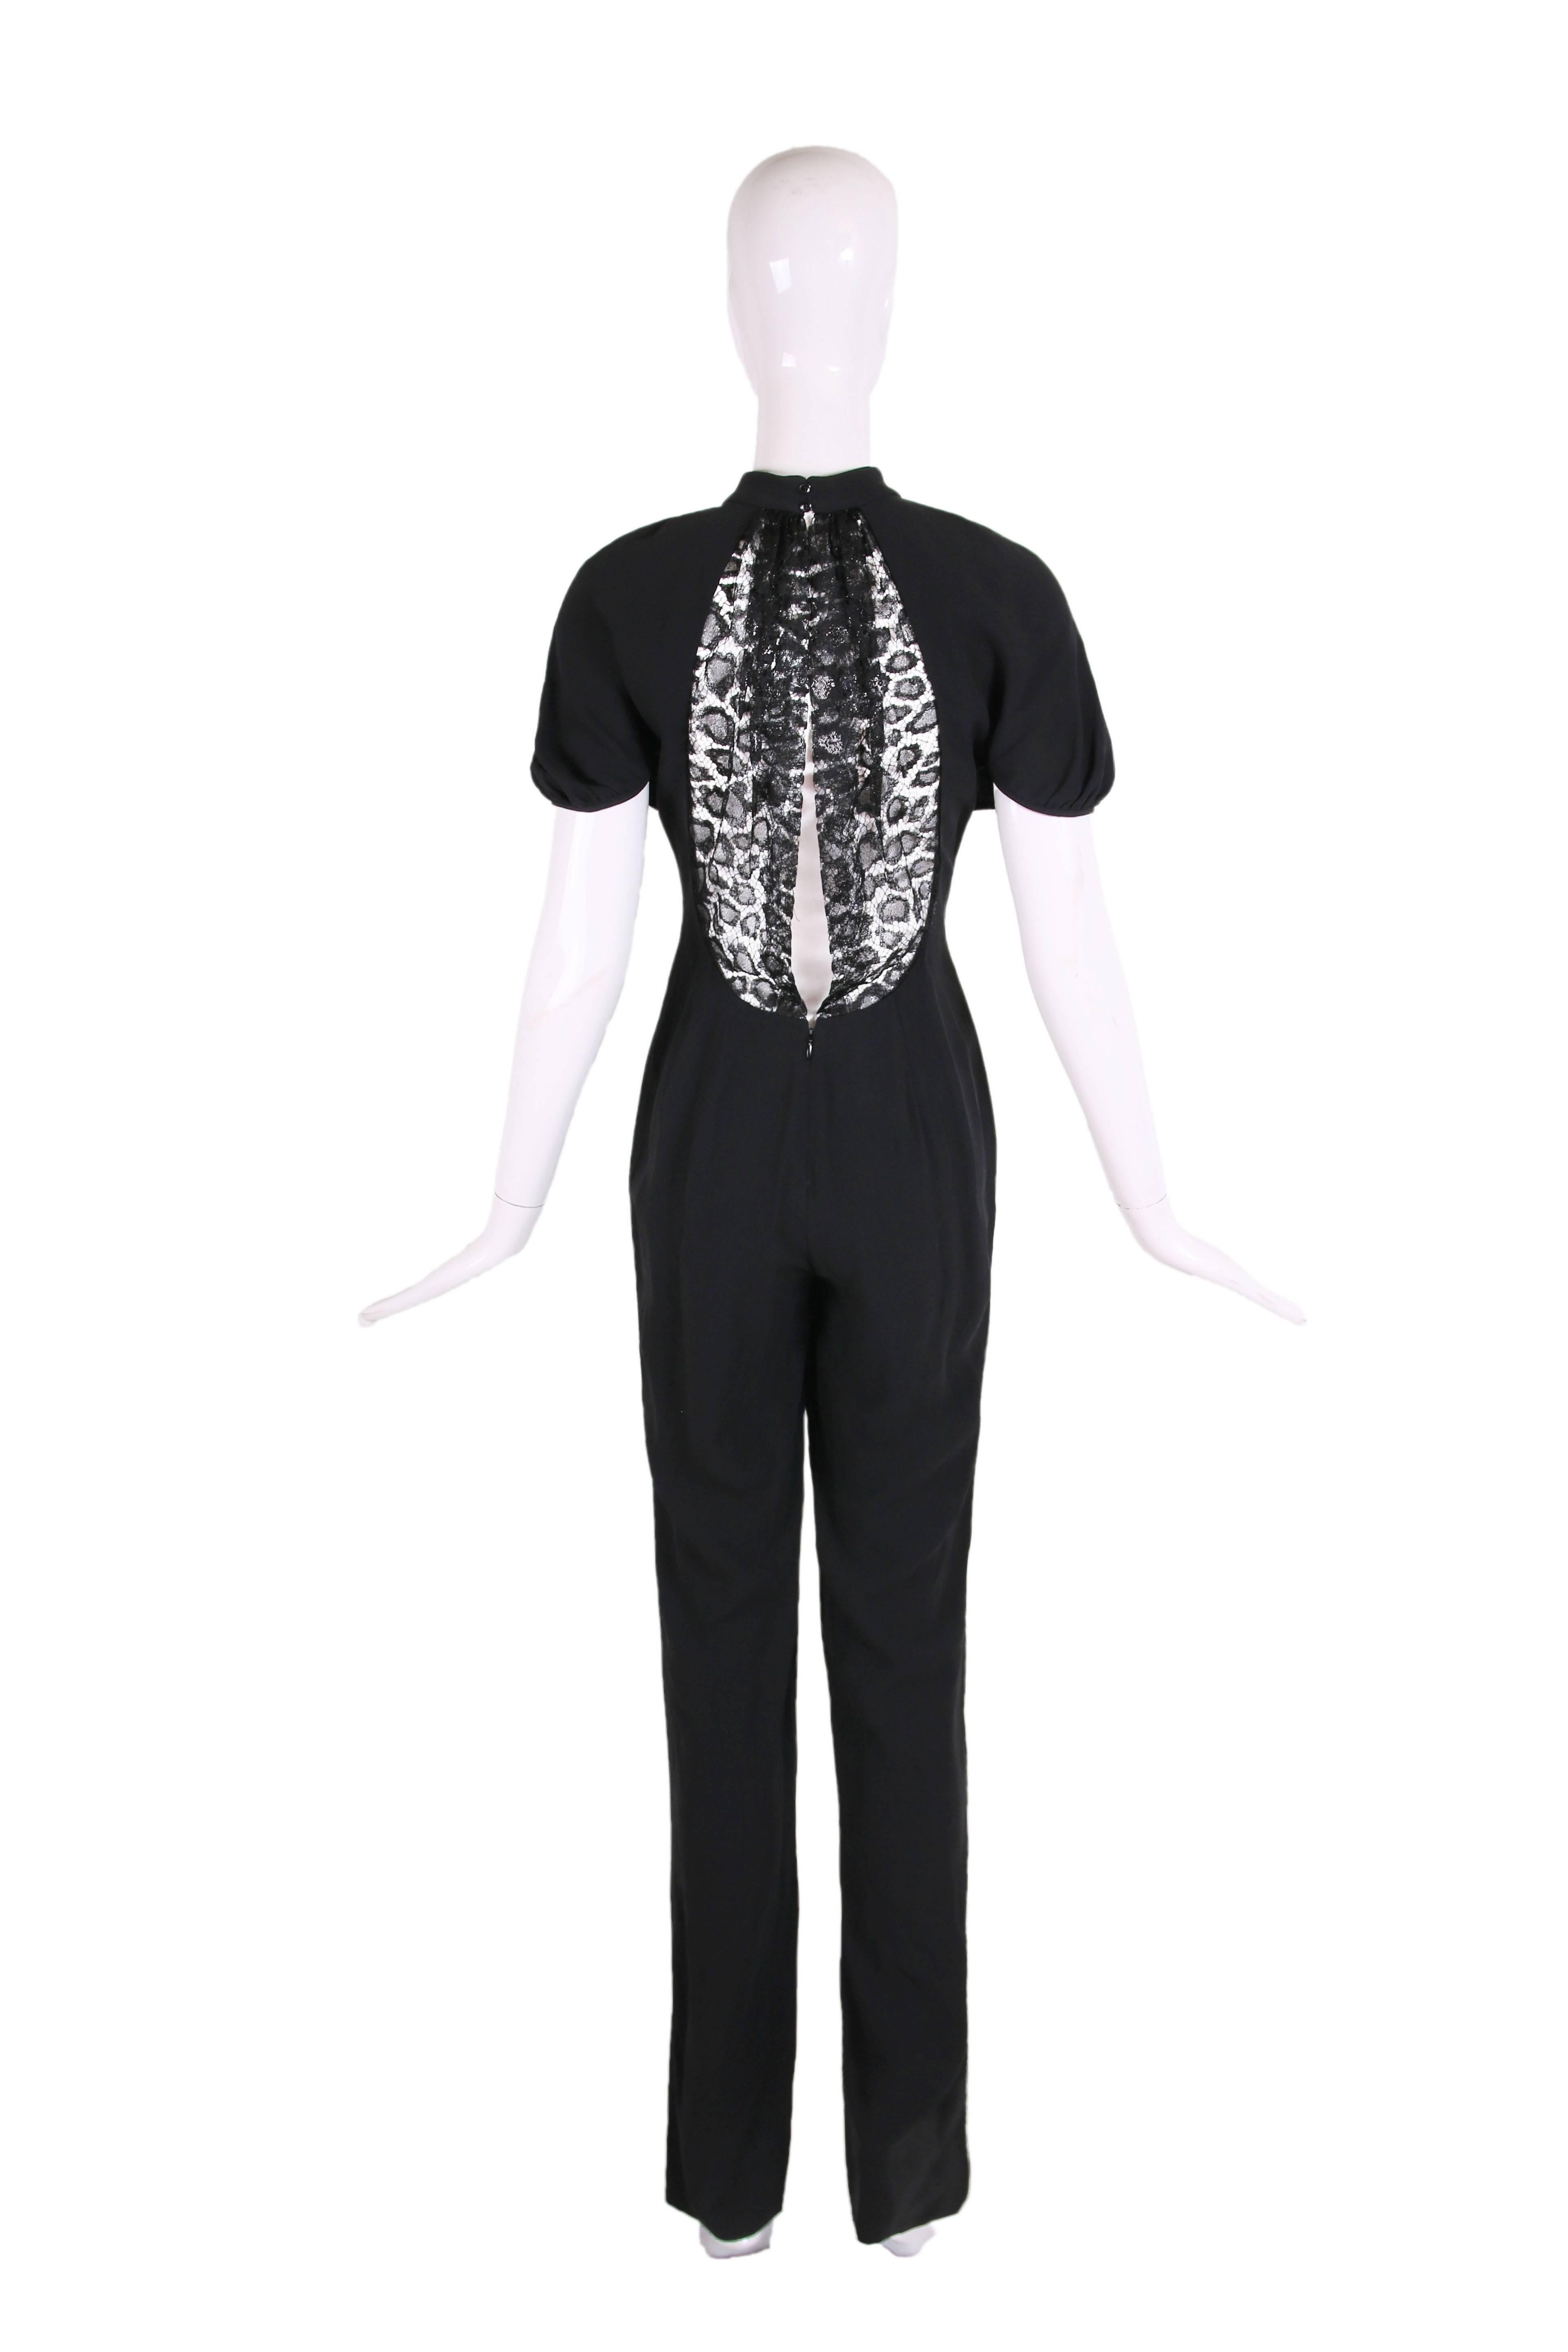 combinaison en crêpe noir Yves Saint Laurent 2012 avec manches courtes et panneau d'illusion en dentelle au dos. En excellent état - taille 38.